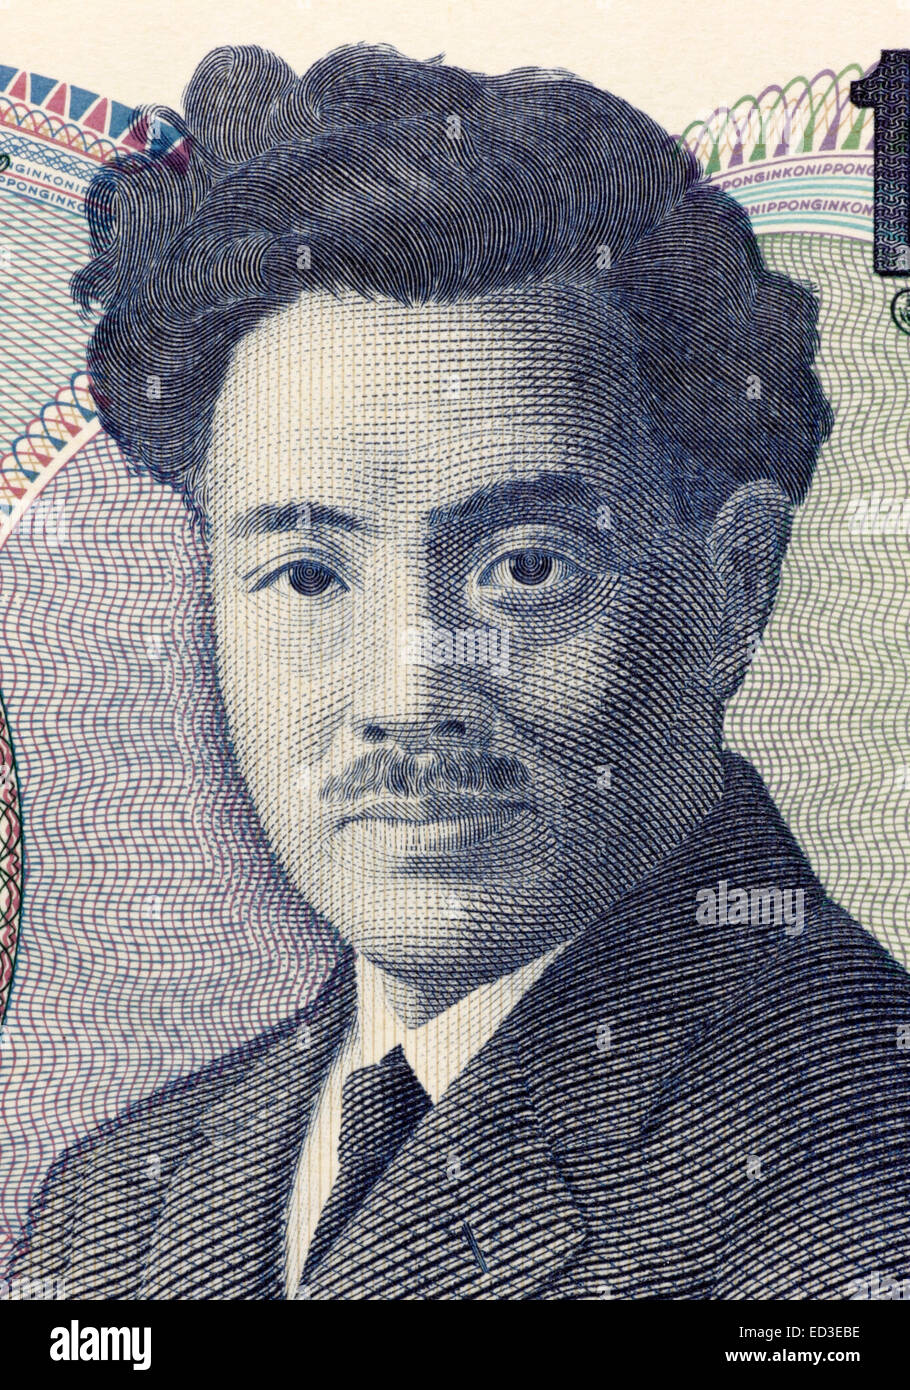 Prix Hideyo Noguchi (1876-1928) sur le billet de 1000 yens 2011 du Japon. Bactériologiste japonais. Banque D'Images